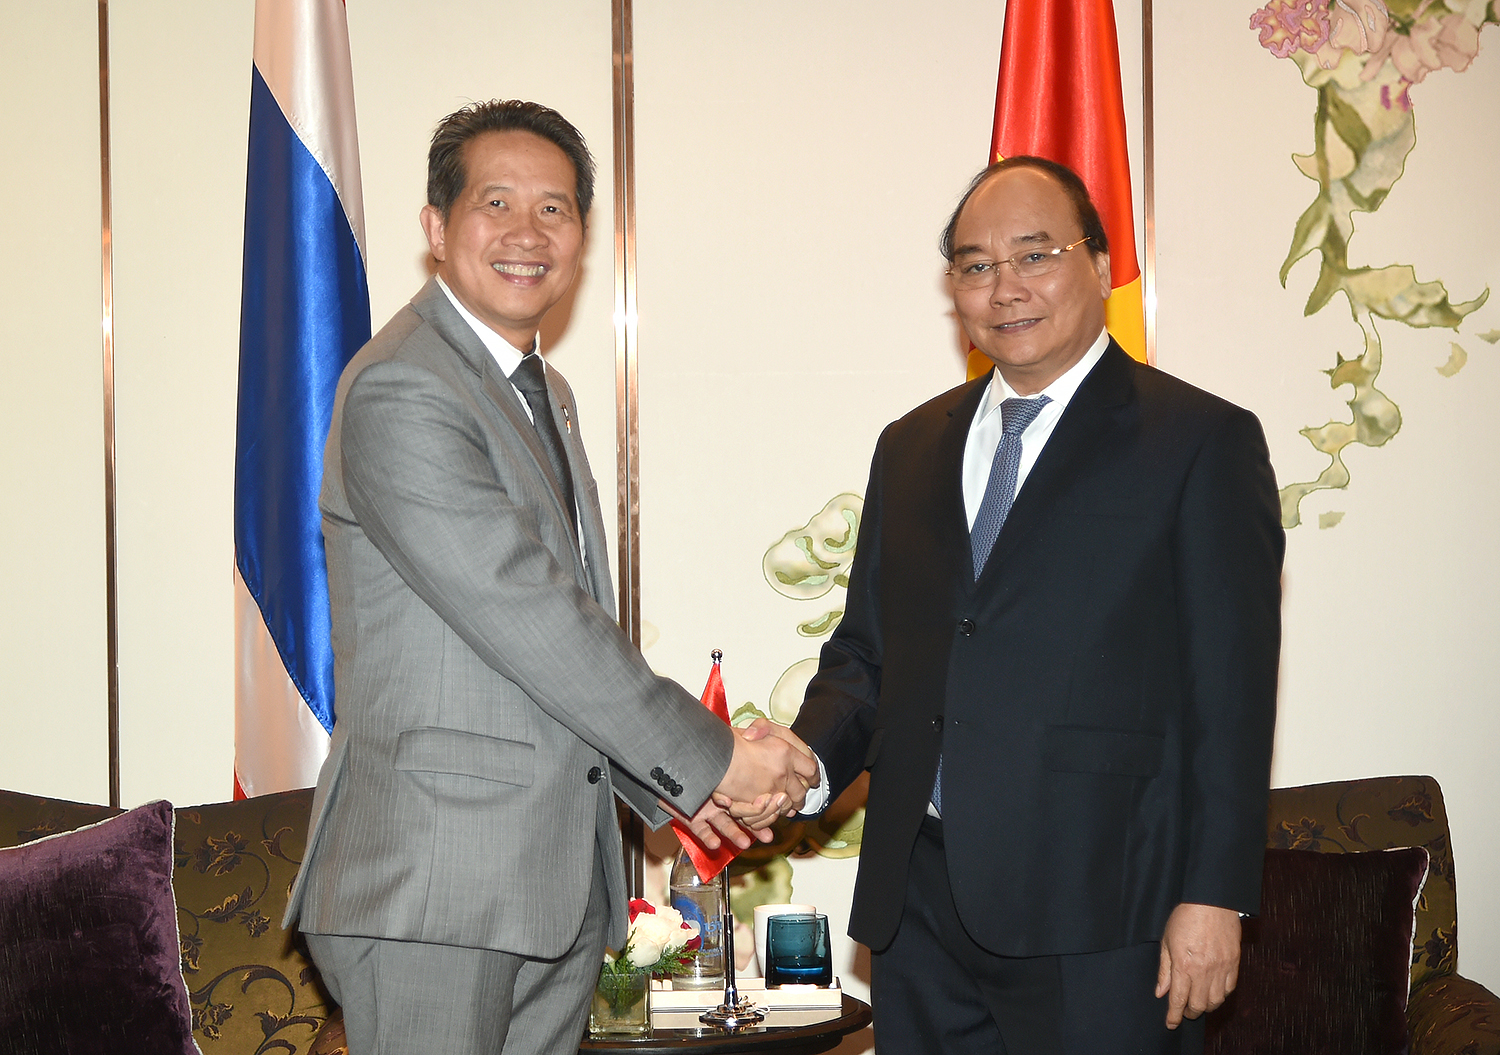 Thủ tướng Nguyễn Xuân Phúc tiếp ông Kornrasit Pakchotanon, Chủ tịch Công ty Điện lực Thái Lan-EGAT. Ảnh: VGP/Quang Hiếu